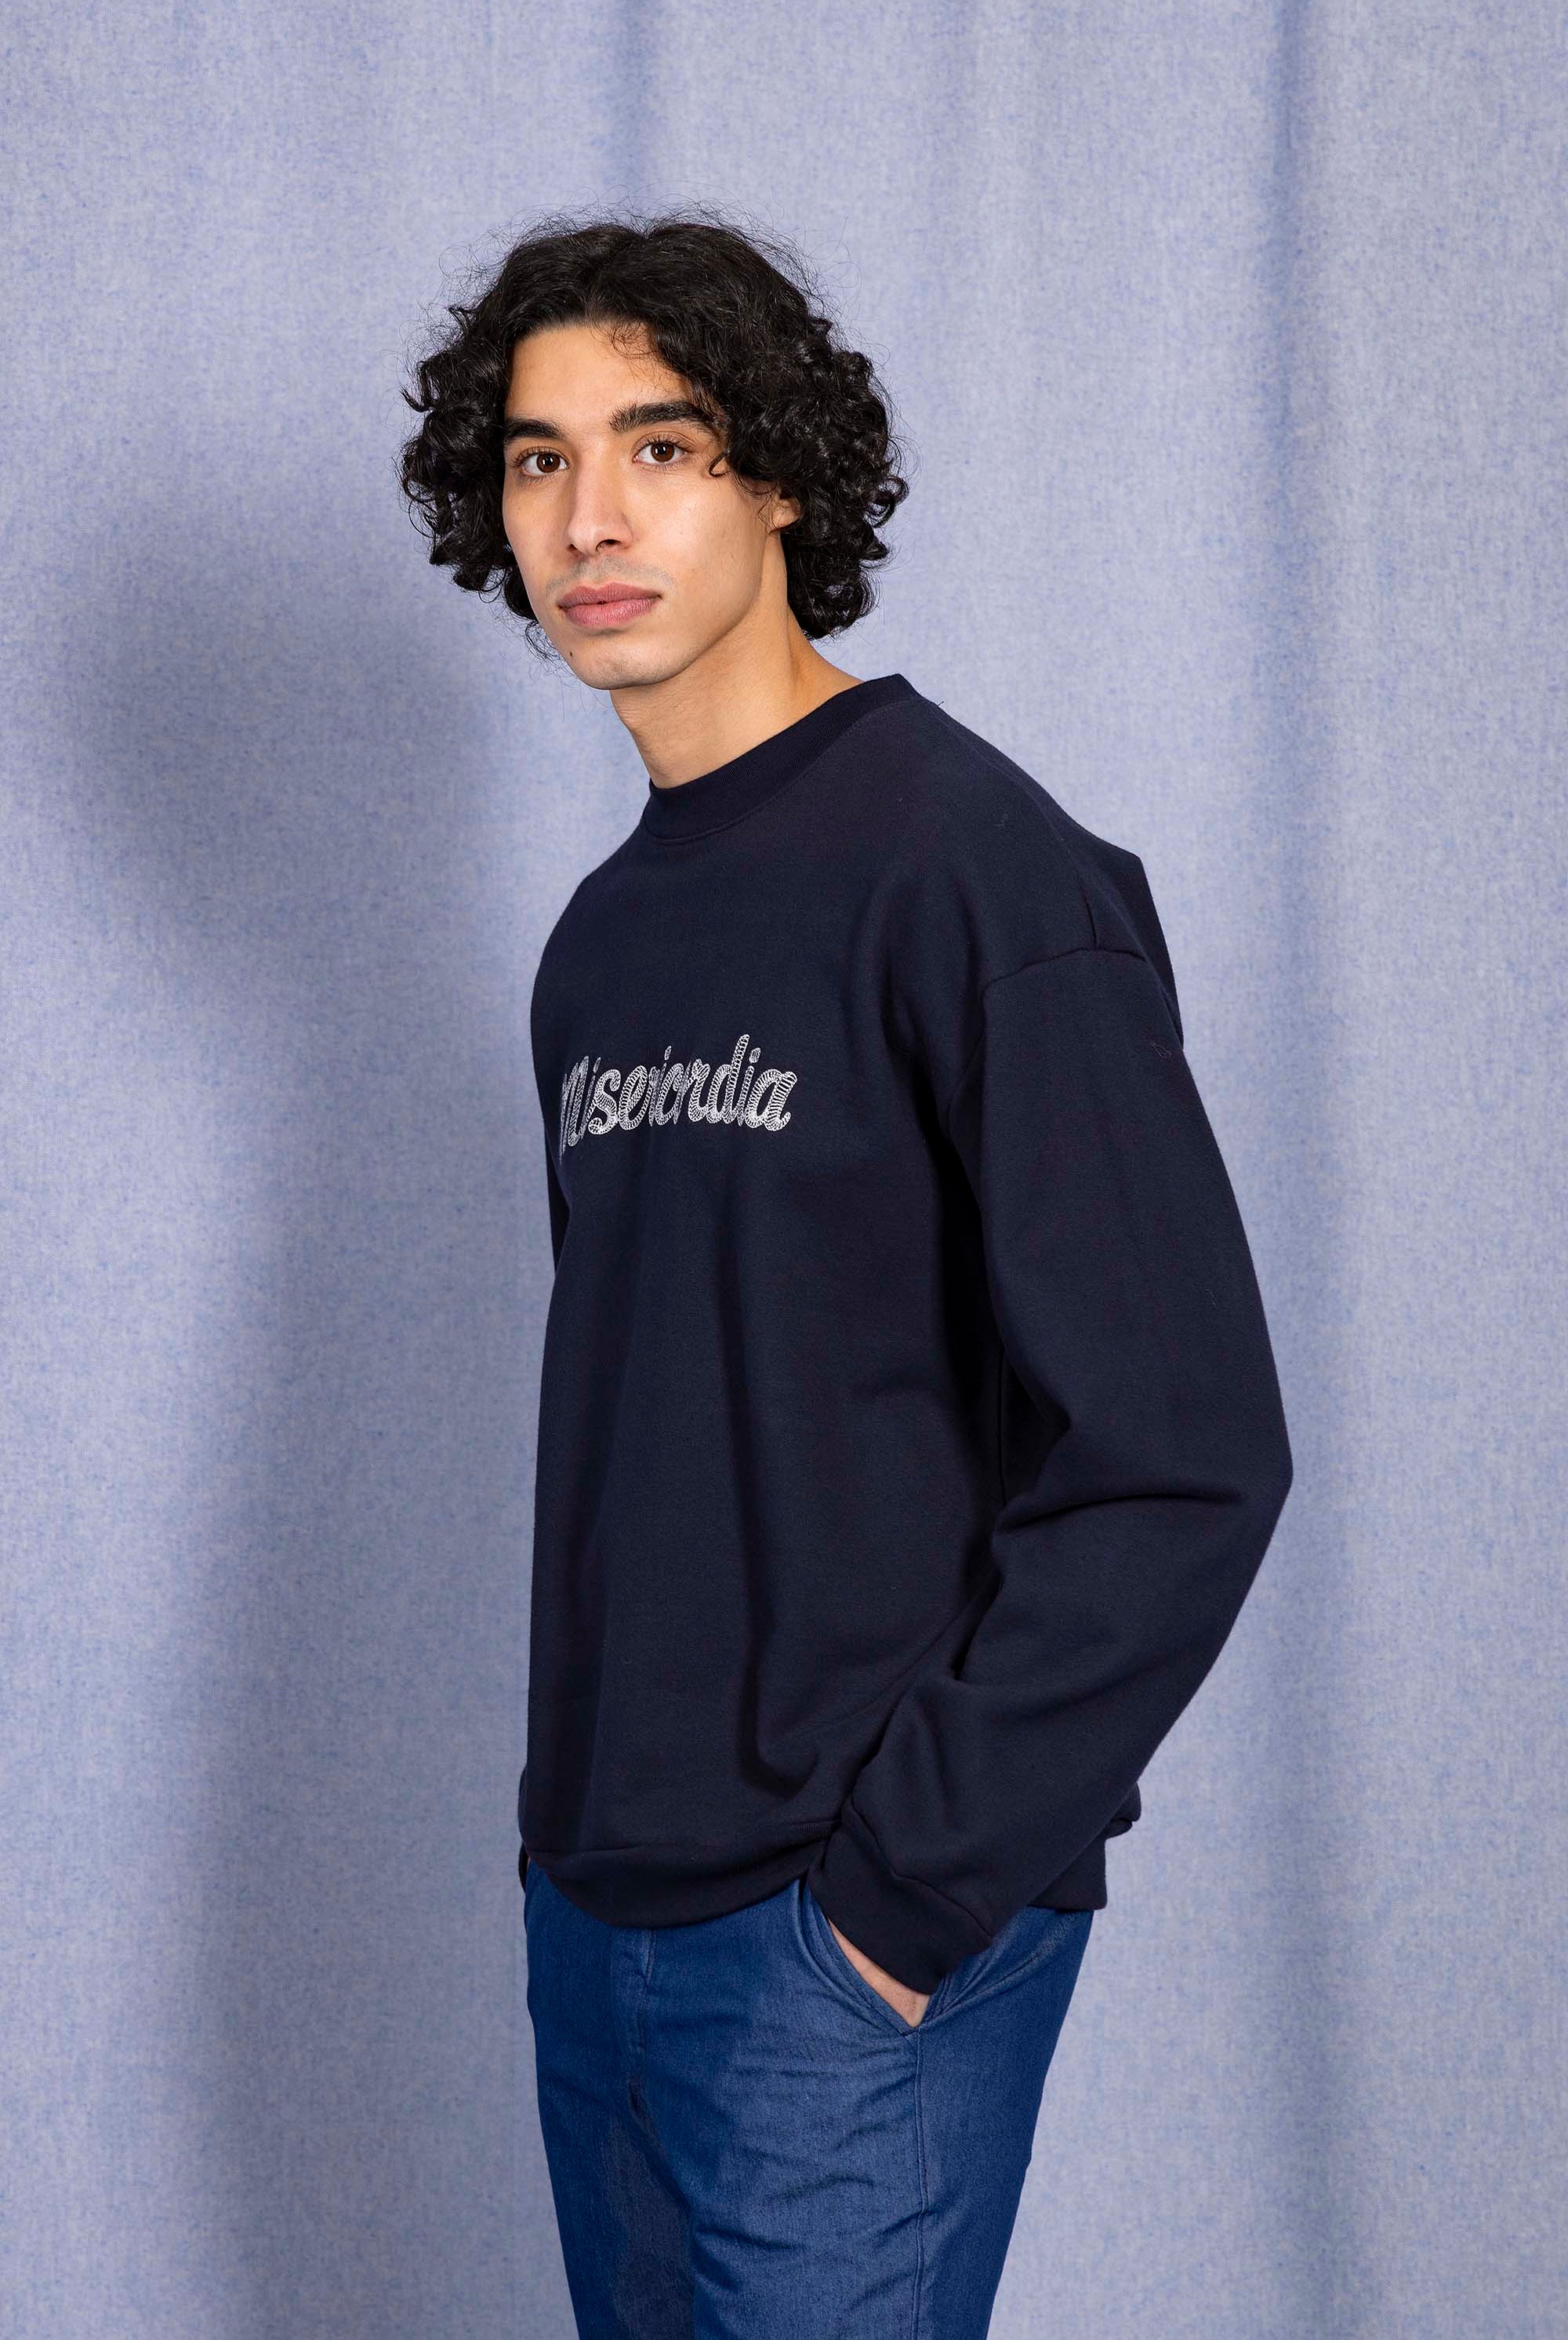 Sweatshirt Angelo Misericordia Bleu Marine Des sweatshirts homme aussi bien coupés que confortables